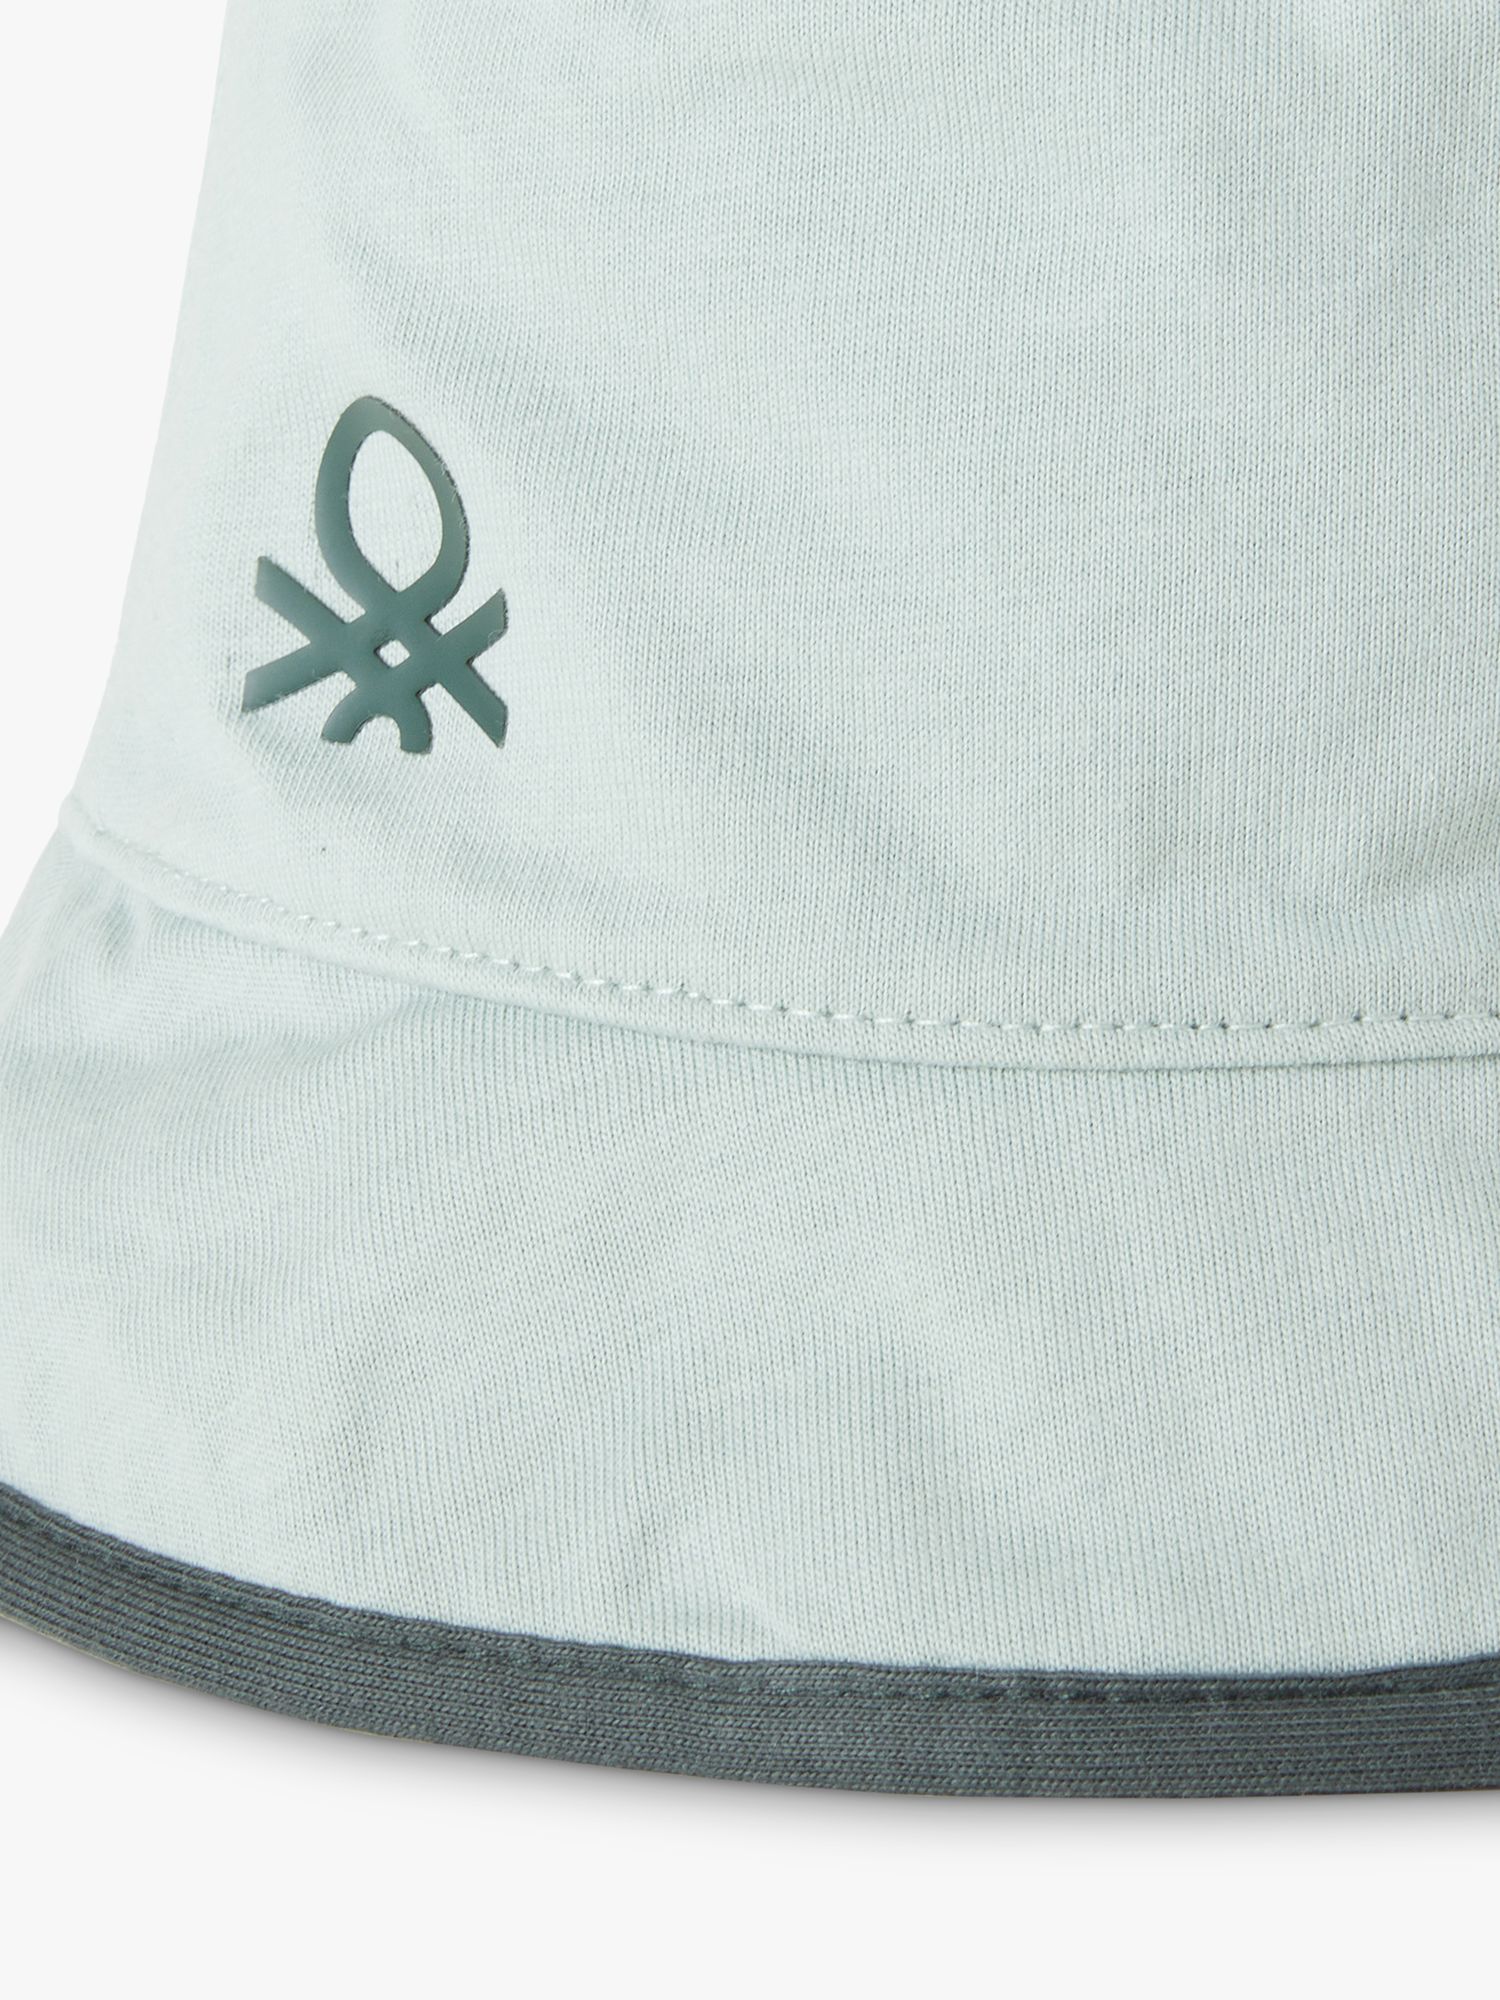 Benetton Kids' Logo/Pattern Reversible Bucket Hat, Green/Multi, XXS